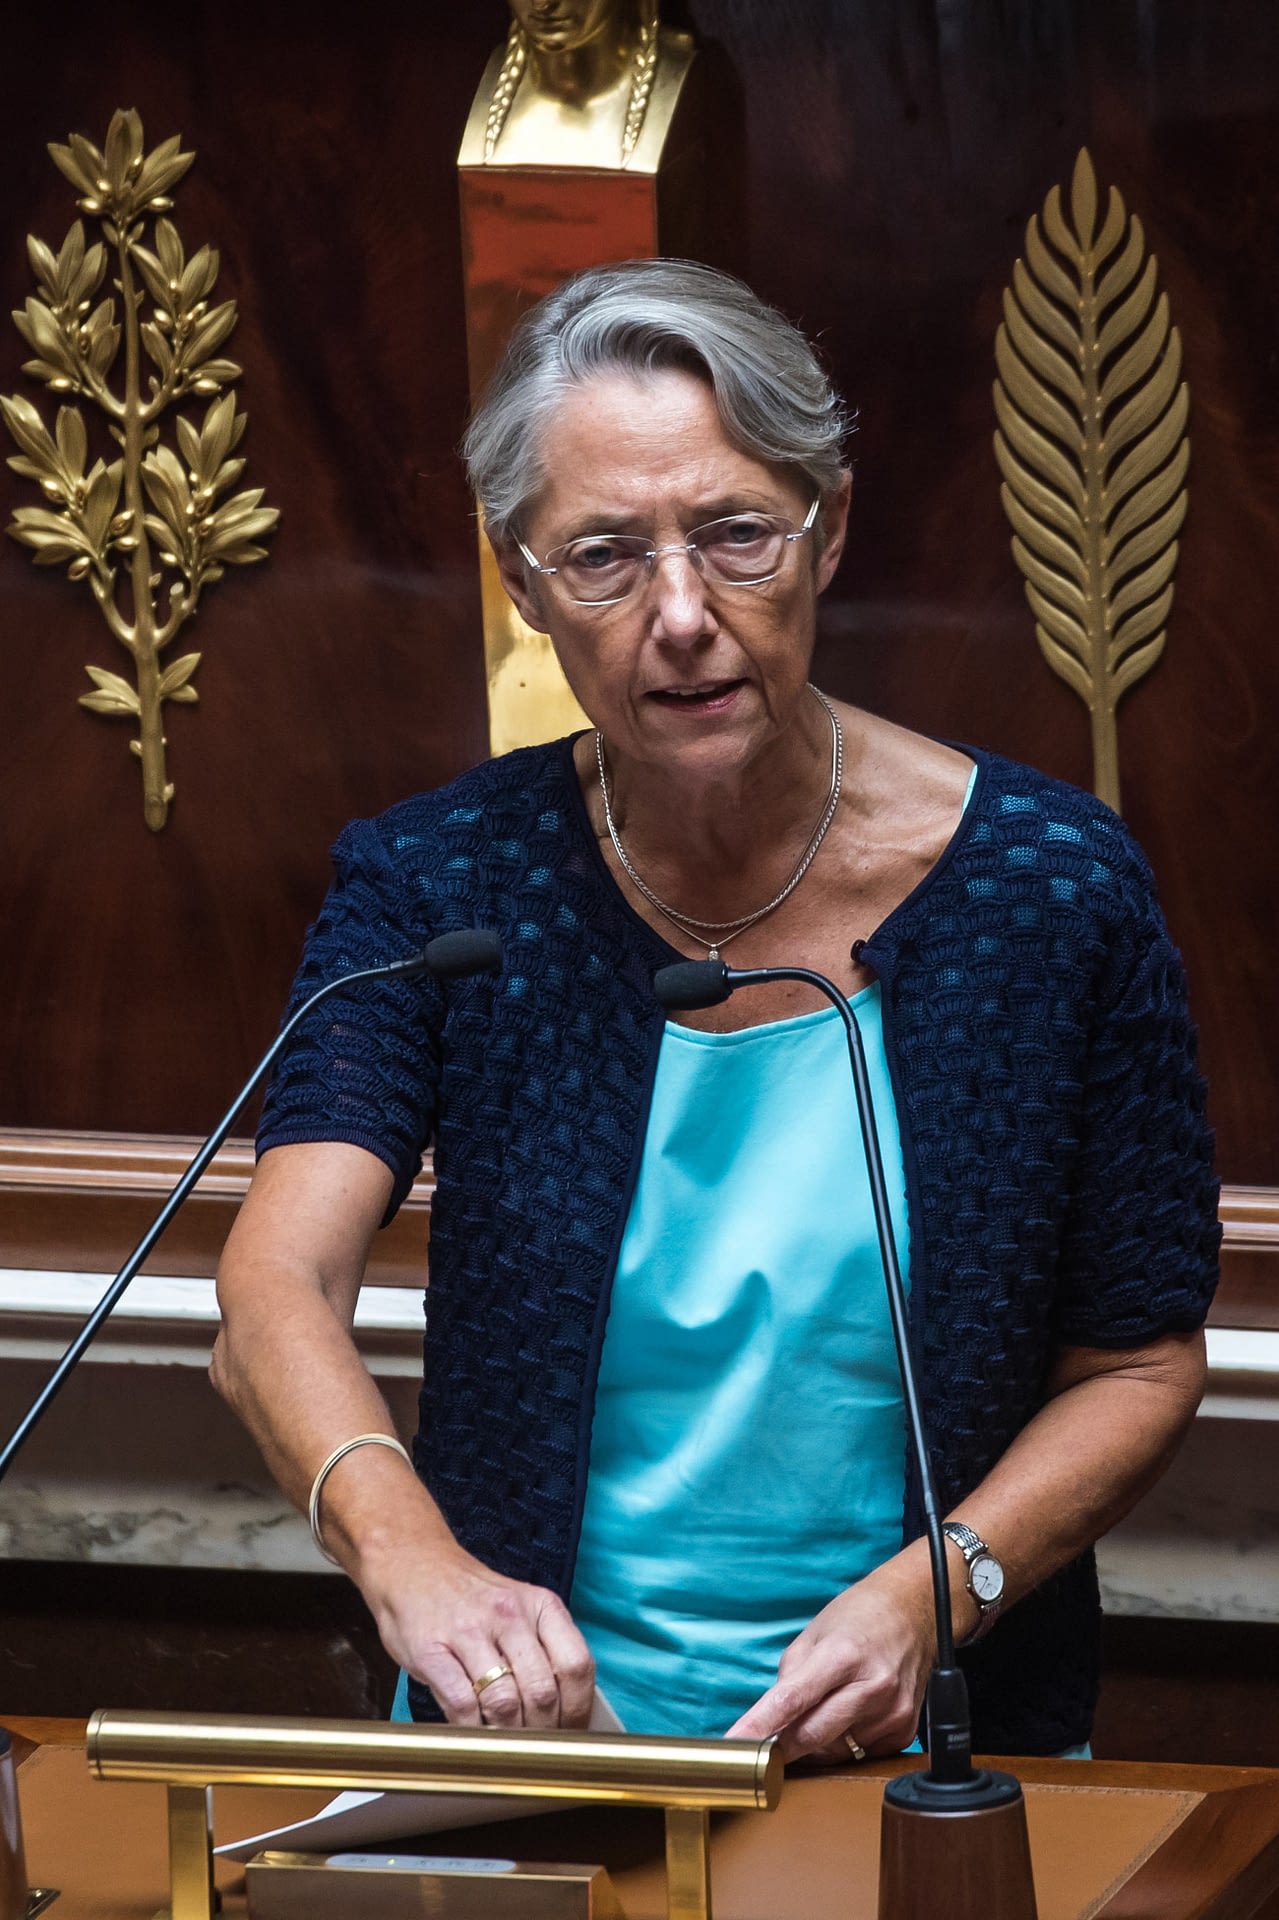 Párizs, 2022. július 11.
Élisabeth Borne francia miniszterelnök a nemzetgyűlés párizsi üléstermében a kormány ellen a baloldali szövetség, a NUPES által benyújtott bizalmatlansági indítvány vitájában 2022. július 11-én.
MTI/EPA/Christophe Petit Tesson